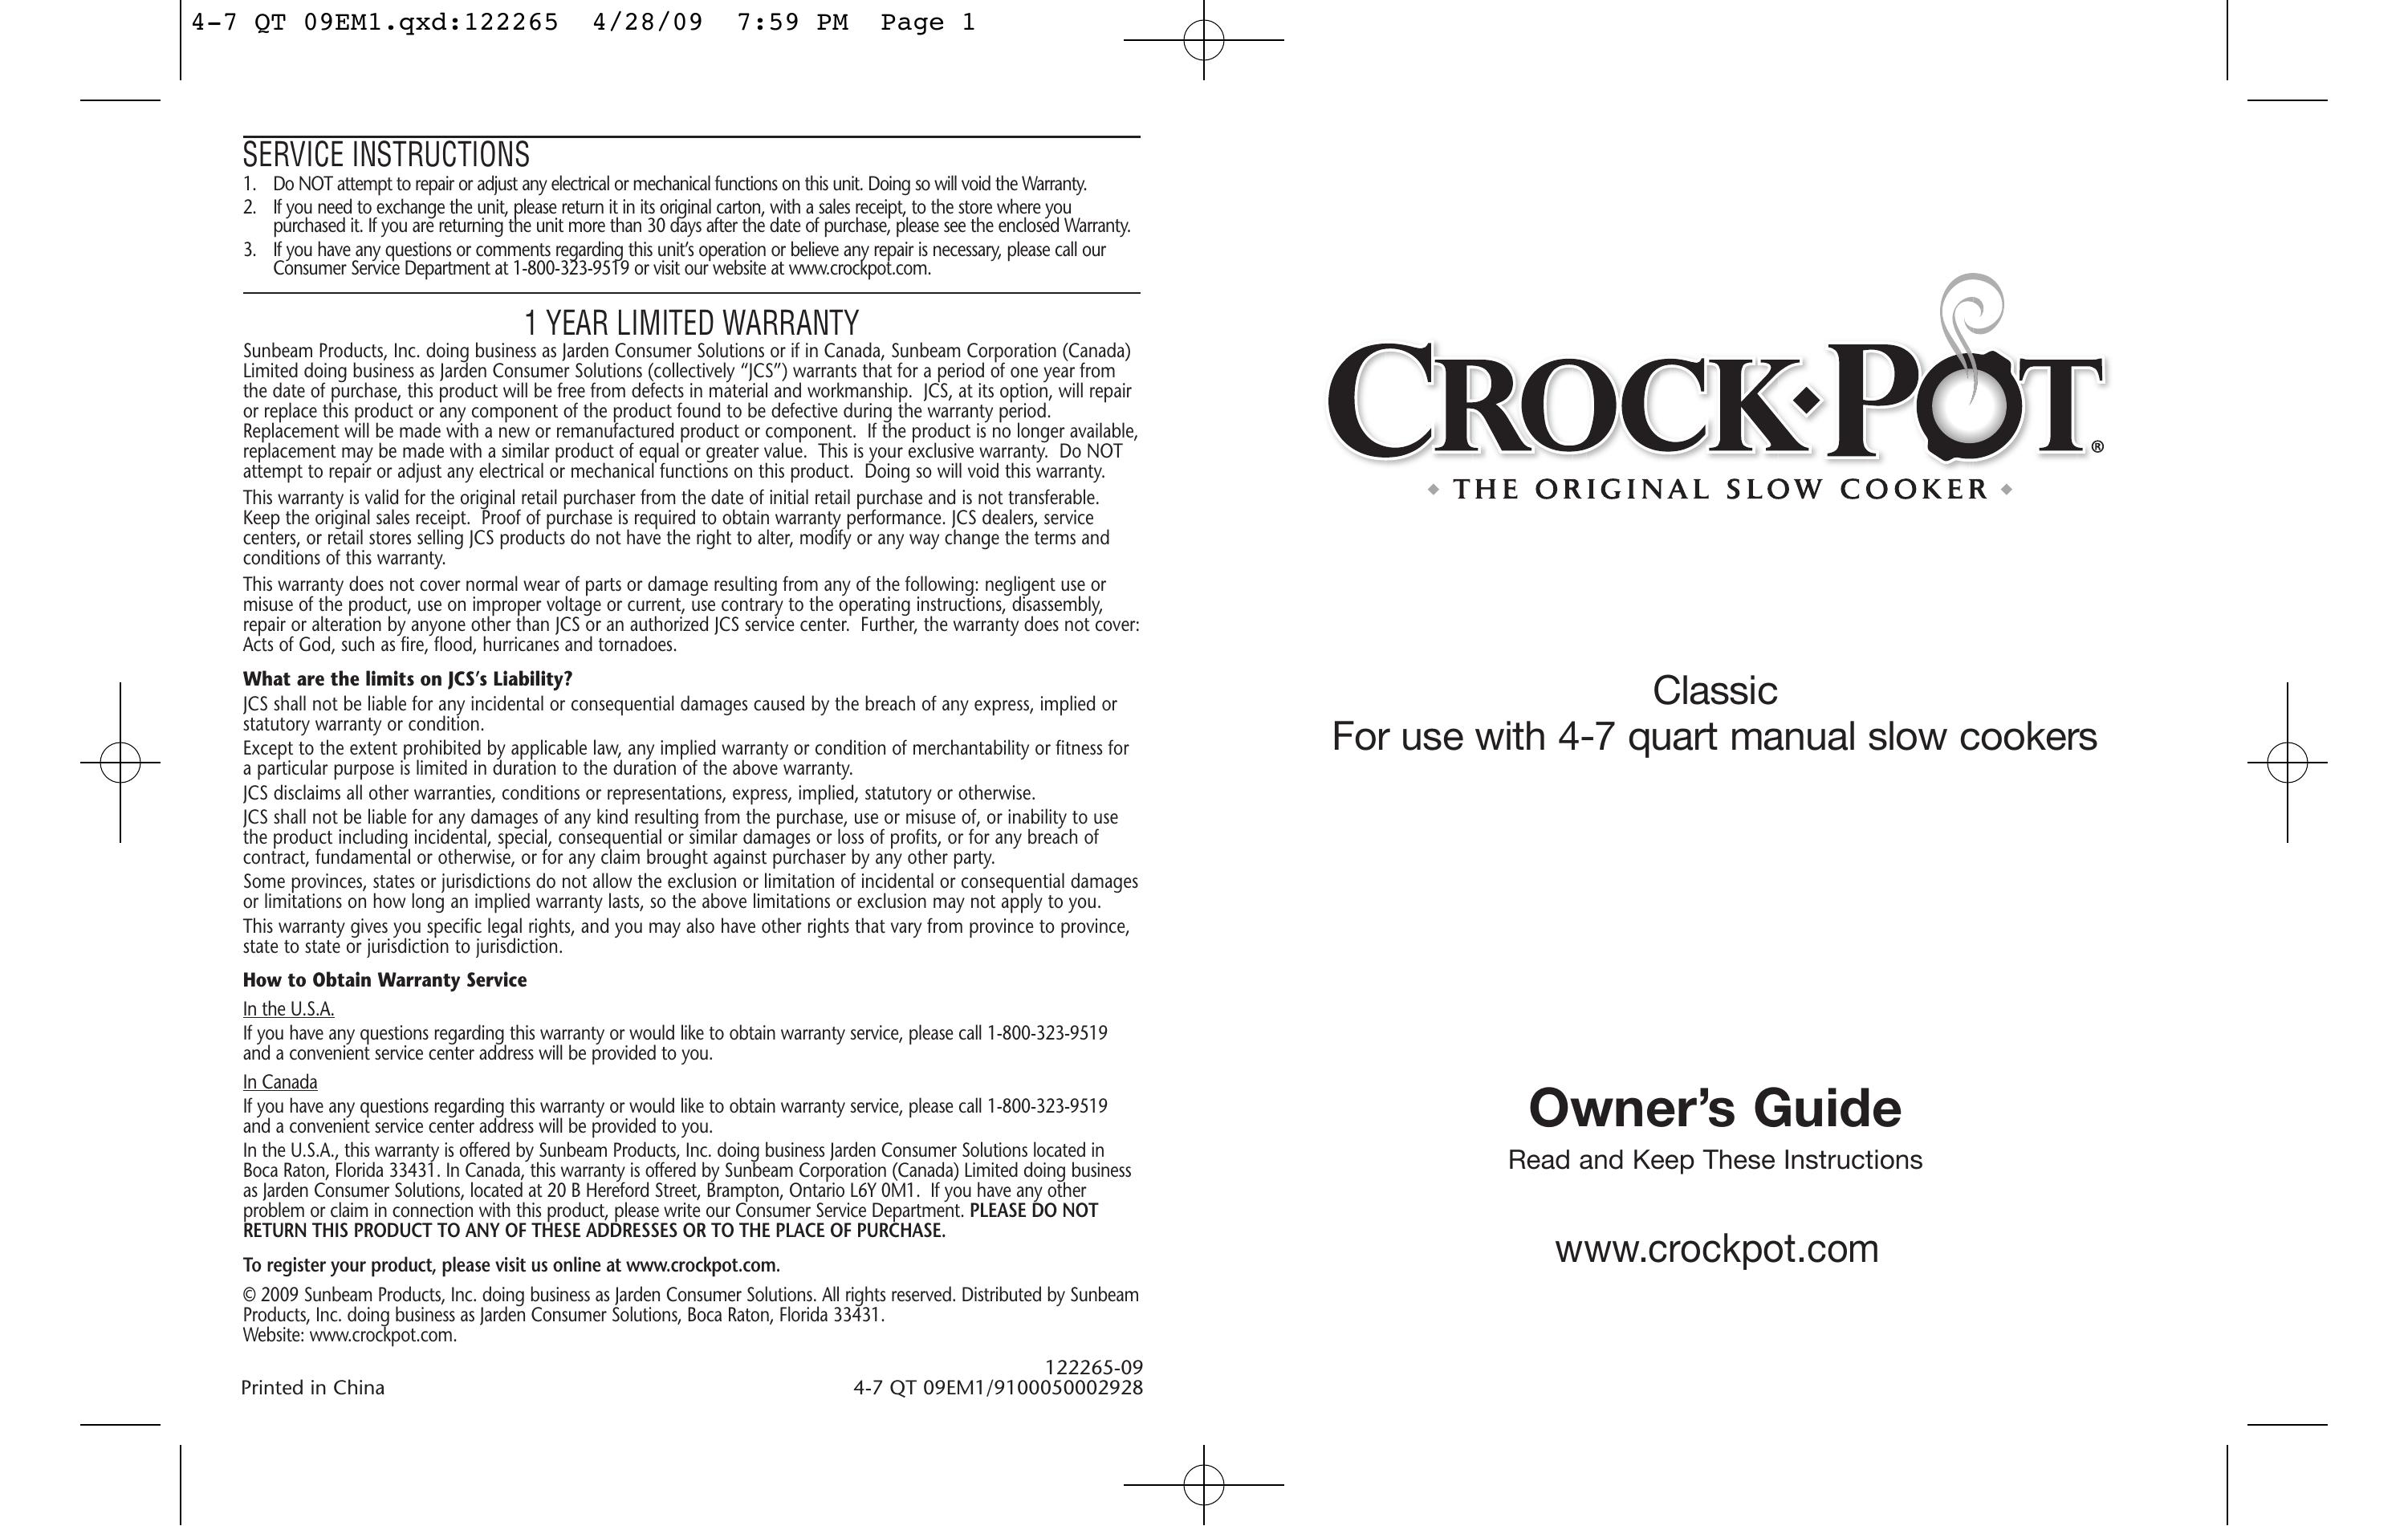 Crock-Pot Classic 4-7 Quart Slow Cooker User Manual